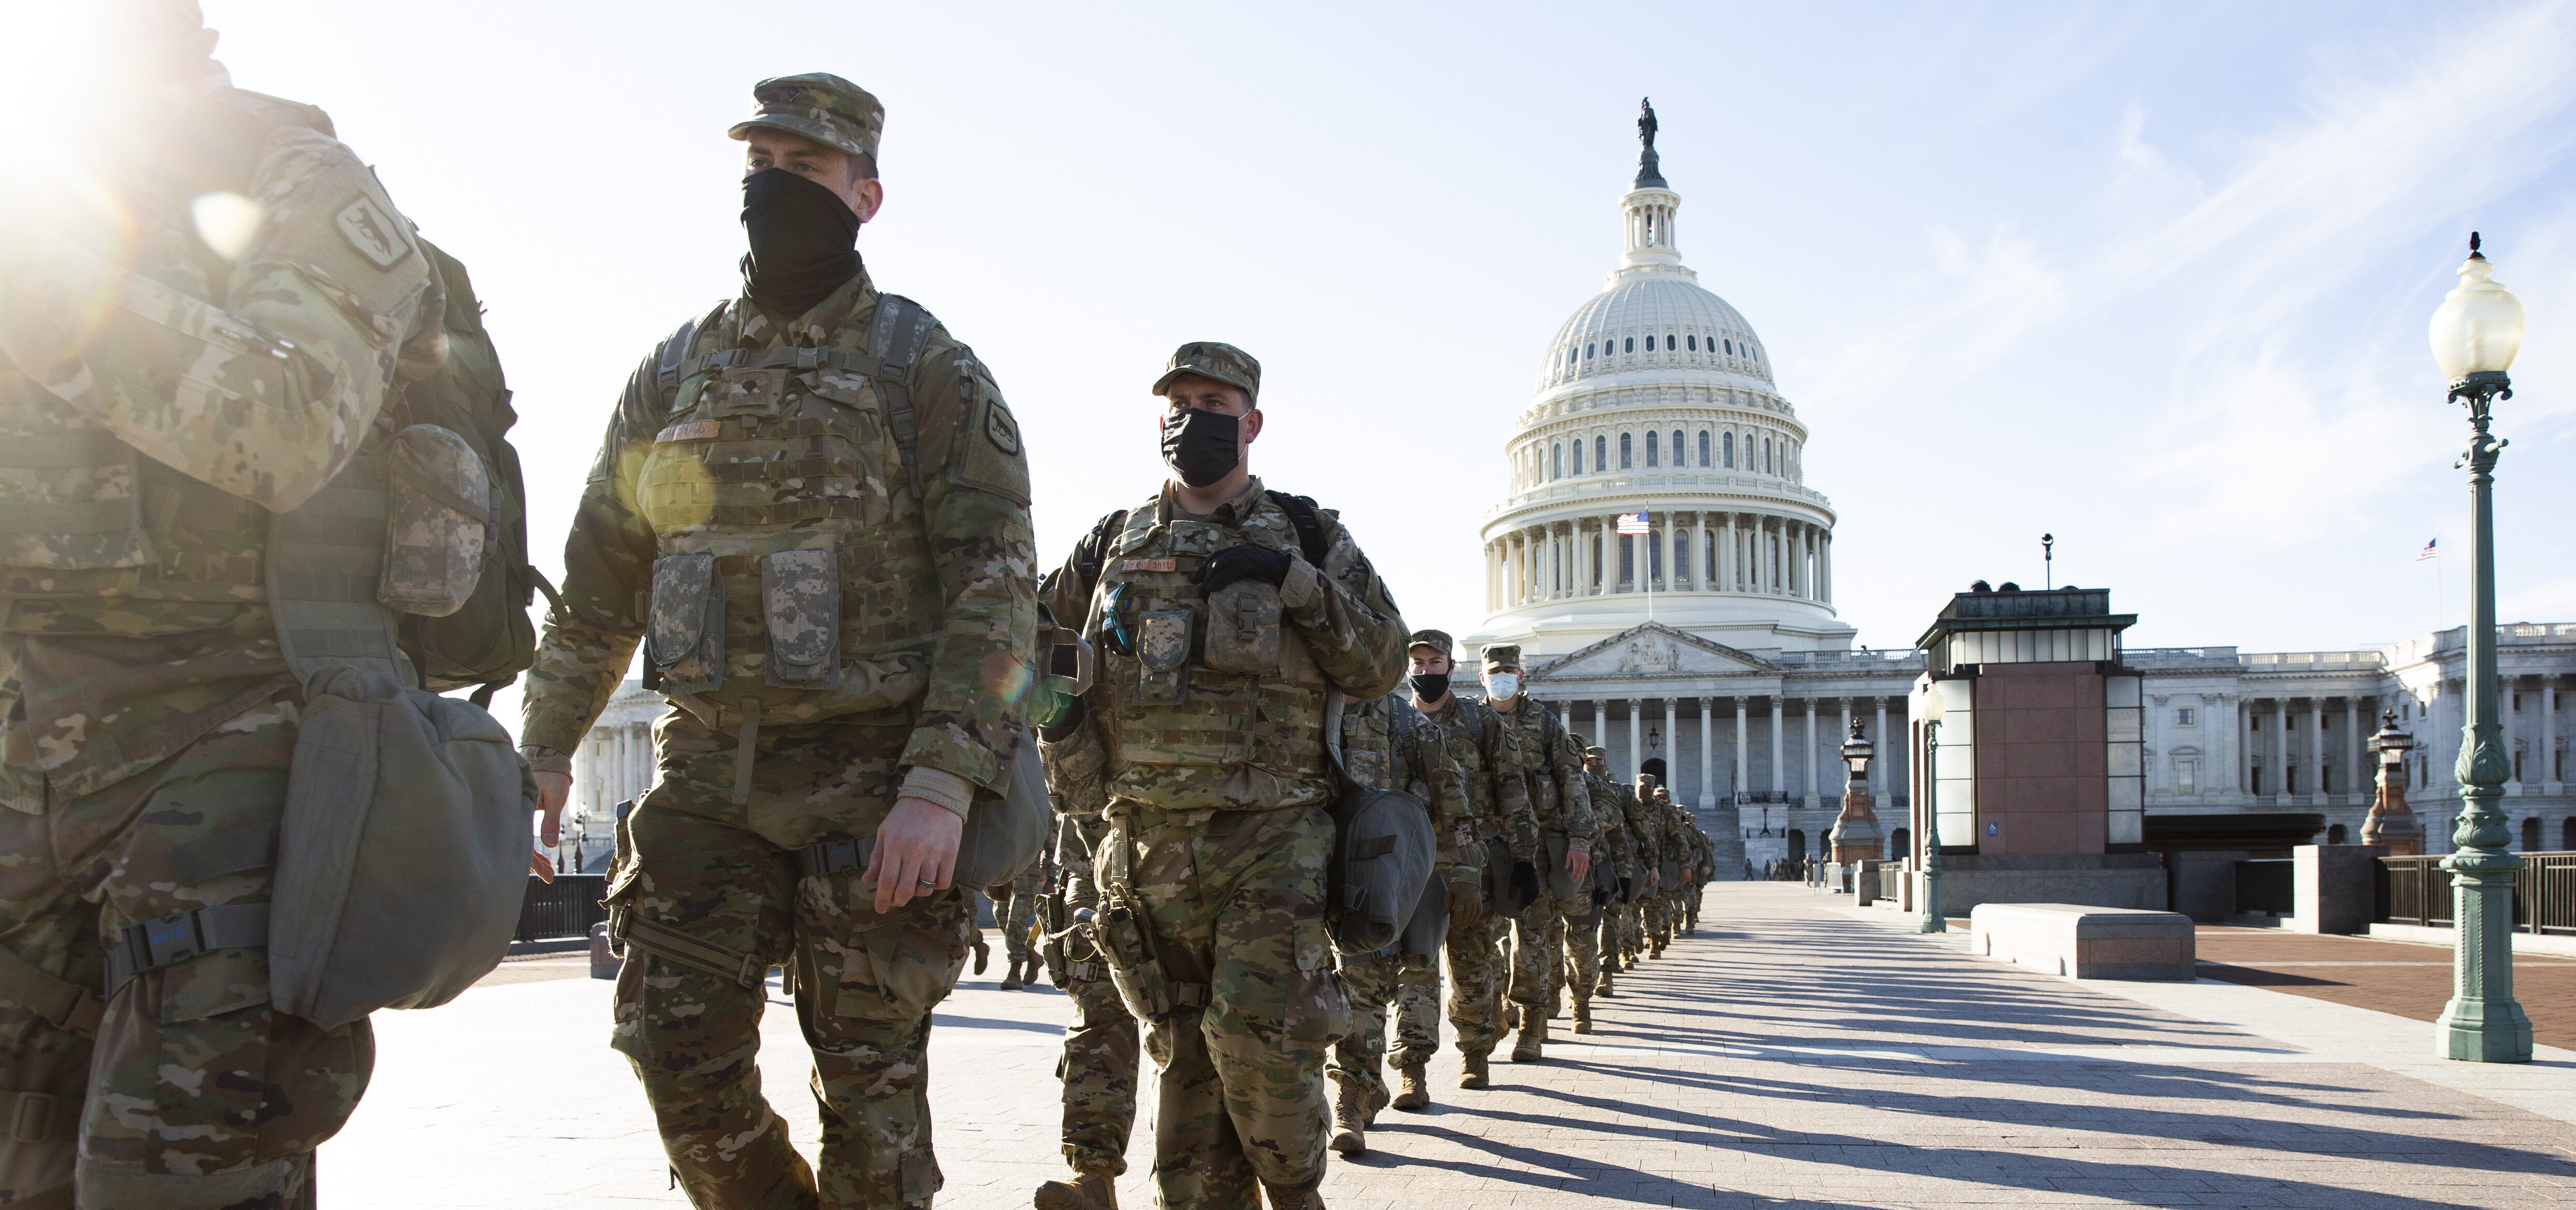 Leden van de National Guard bij het Capitool.